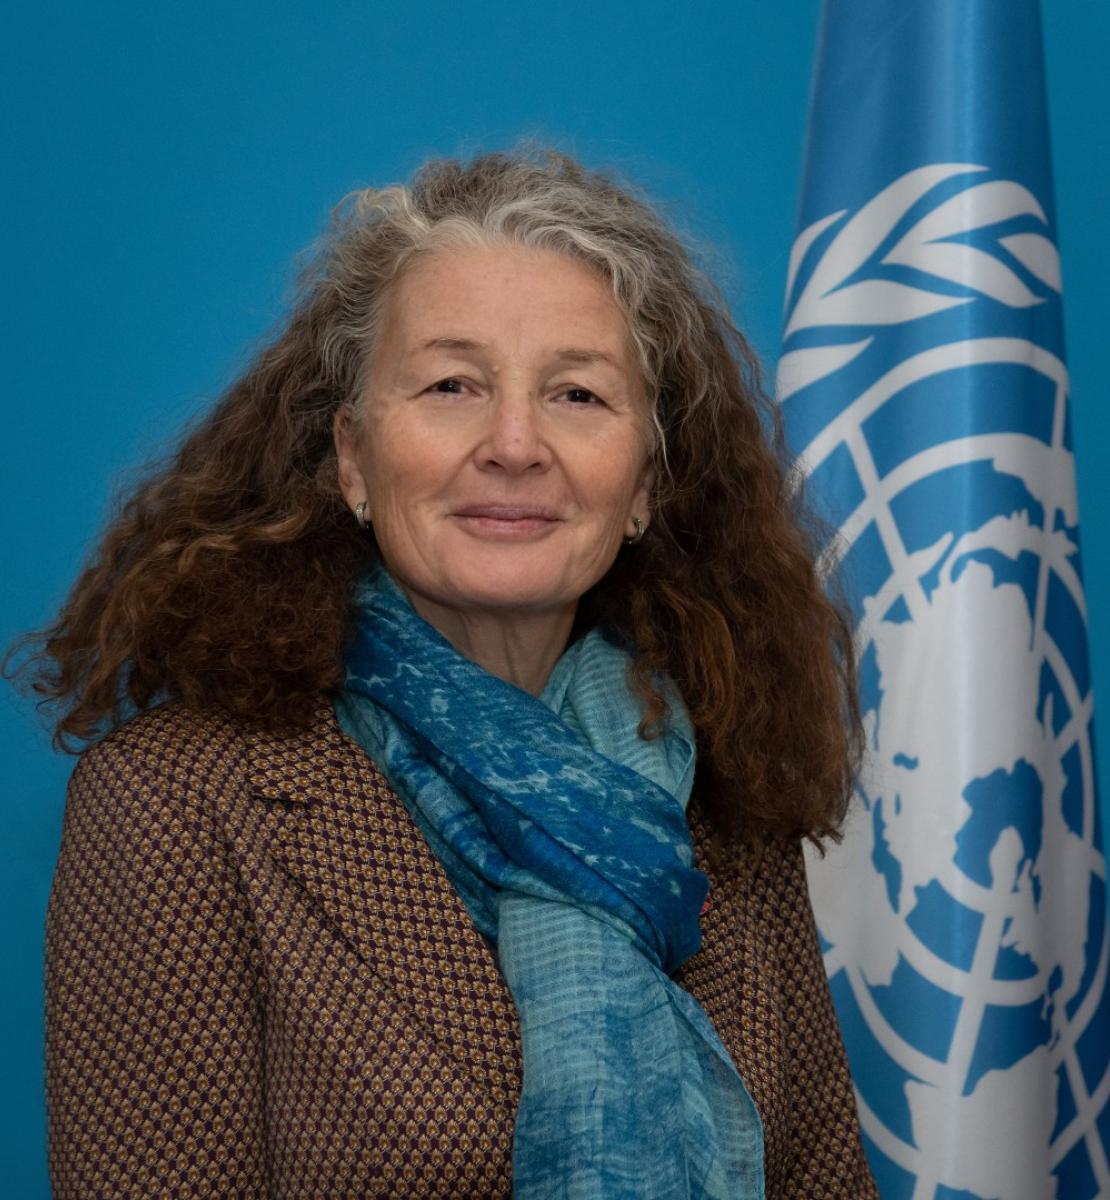 Une femme aux cheveux longs, bouclés et grisonnants et portant un blazer marron et une écharpe bleue se tient près d'un drapeau de l'ONU et regarde la caméra en souriant.